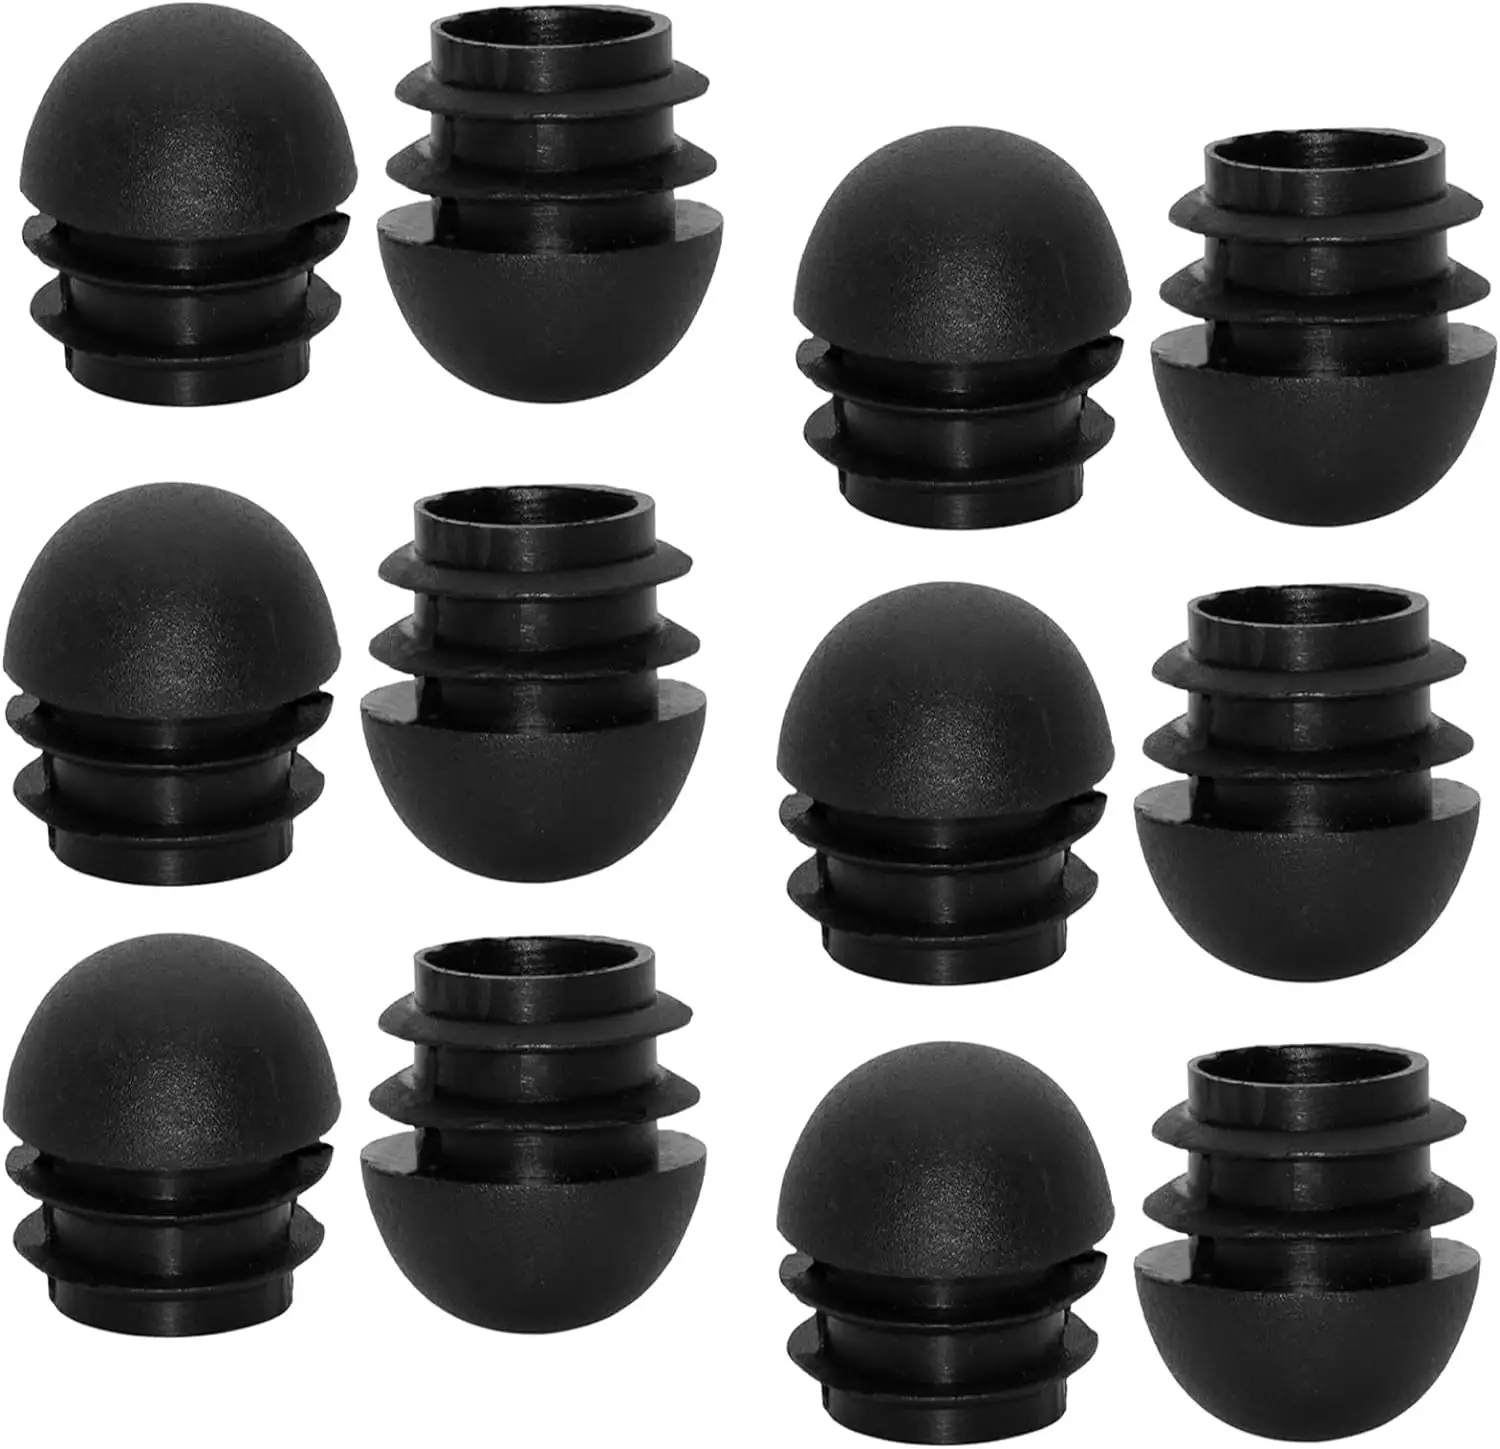 Tapa de tubo de enchufe abovedado de 16mm, tapones de extremo de plástico negro HANSHILAI de 5/8 ", 12 piezas de insertos de tubo redondo, tapones de extremo deslizantes para muebles